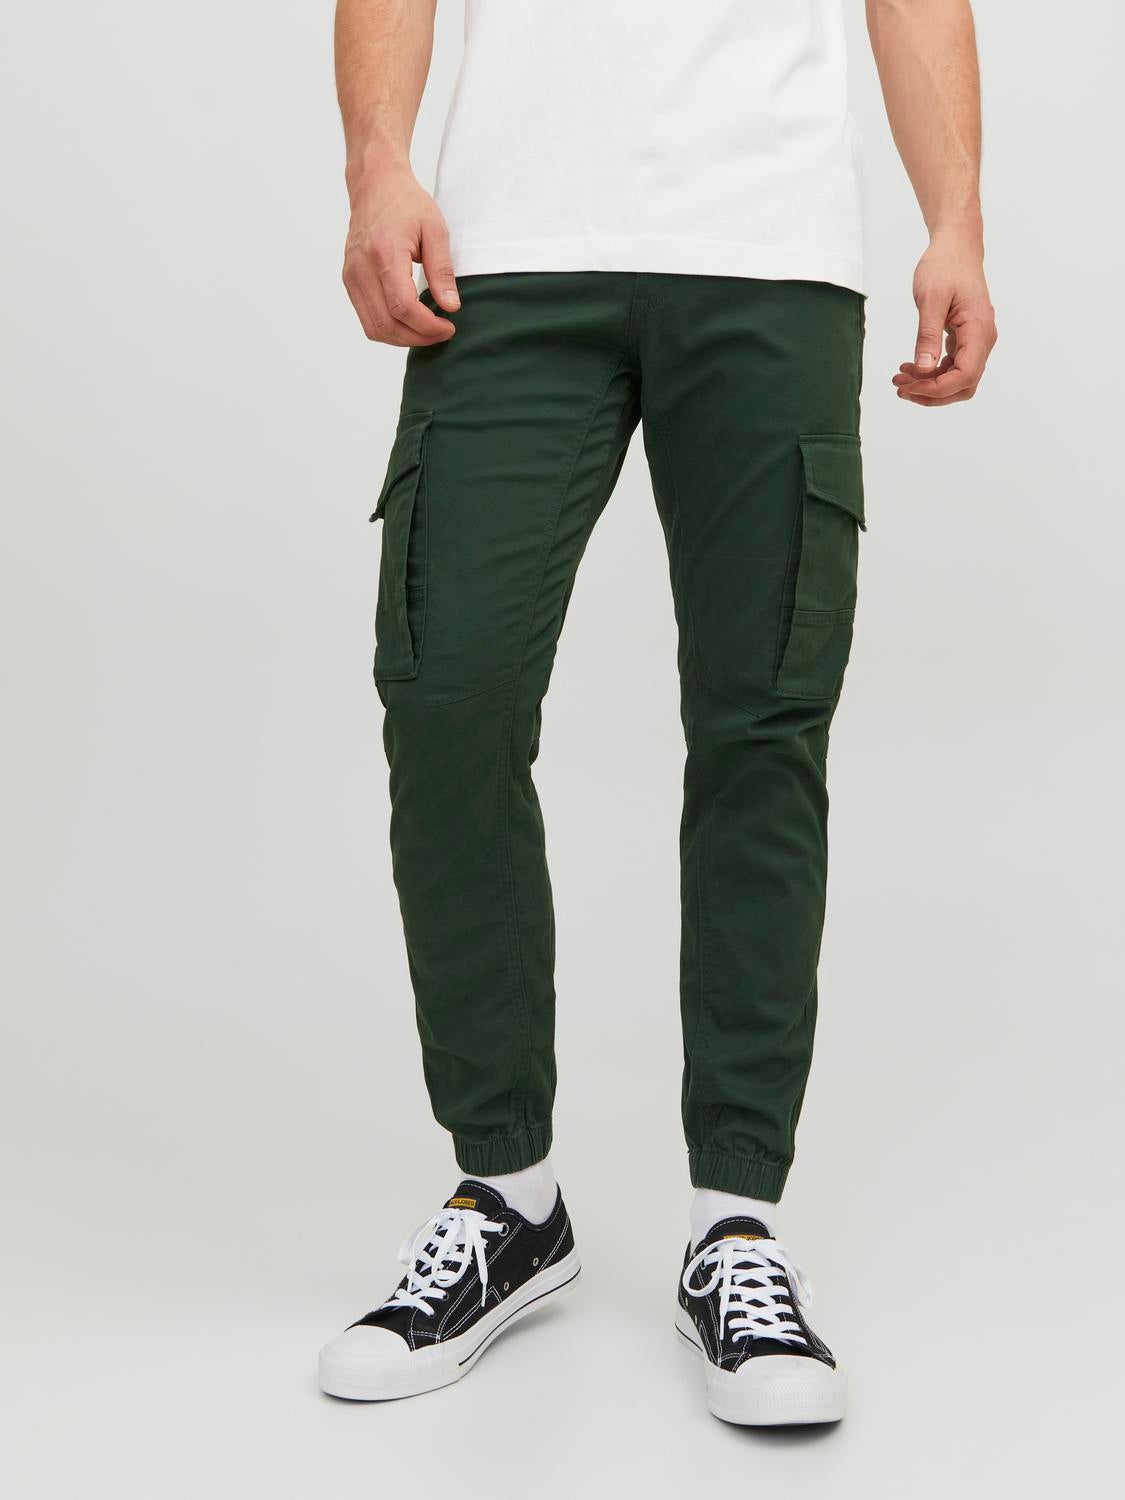 Men's Jack Jones Paul Warner Slim Fit Cargo Pants in Green - Walmart.com